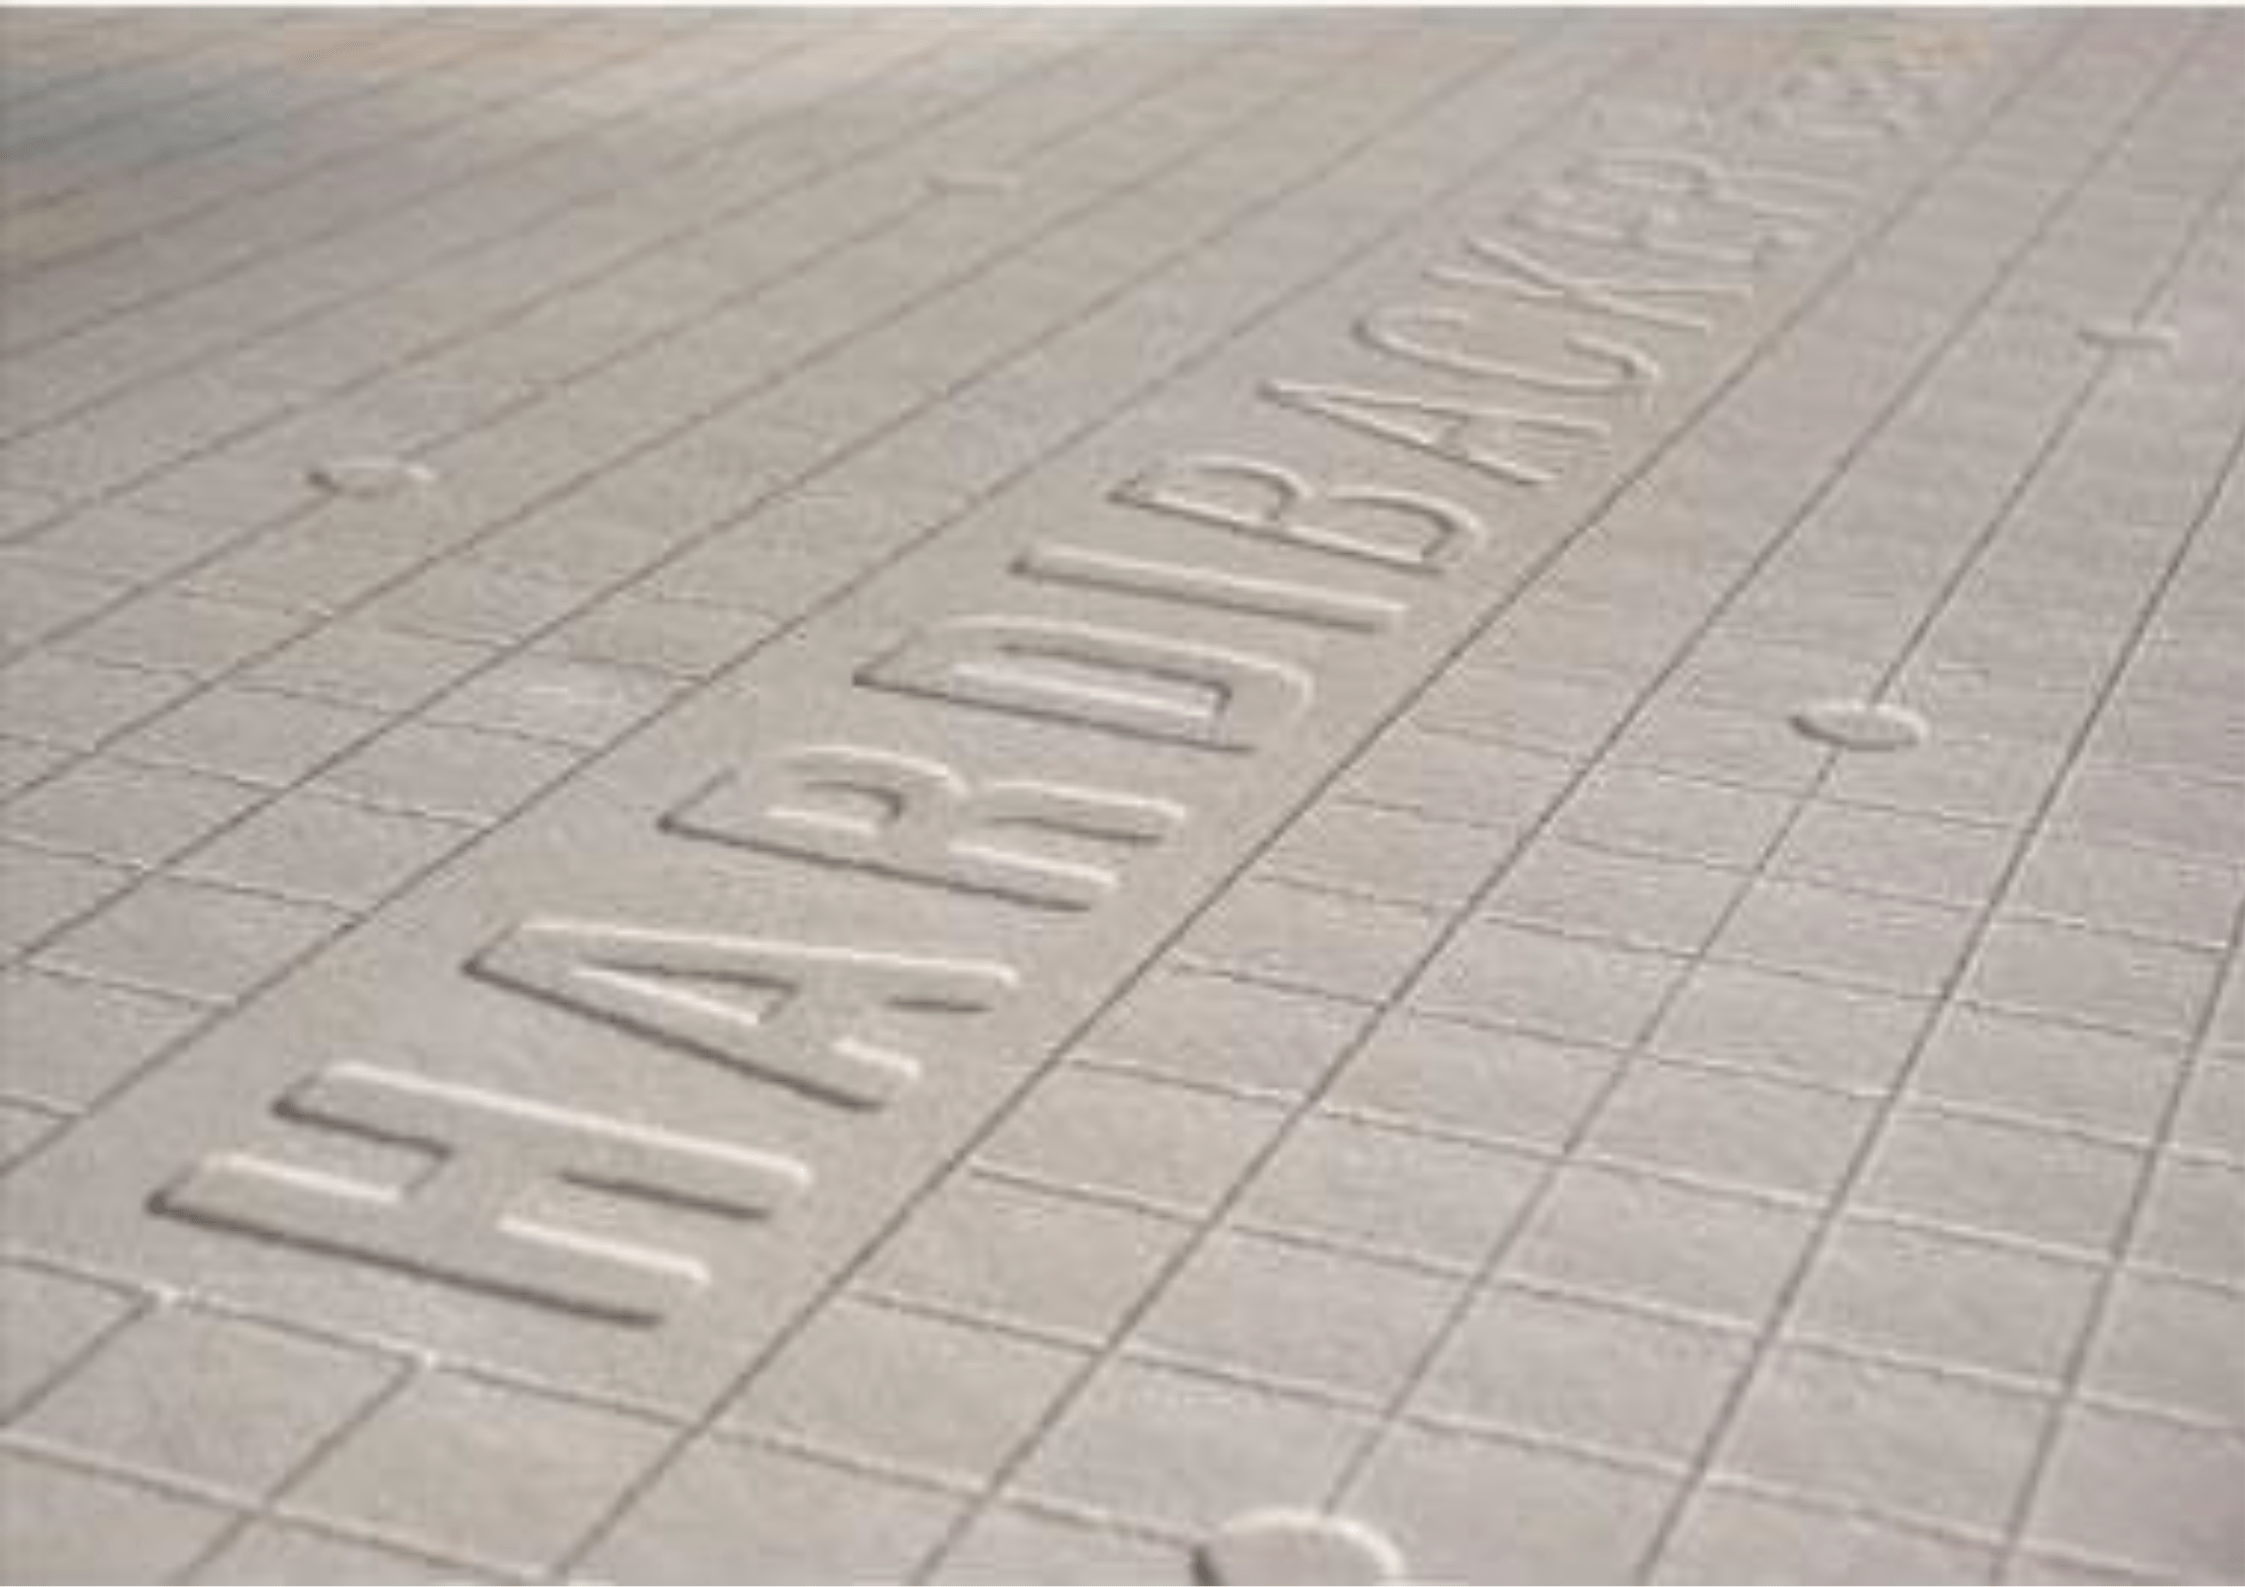 James Hardie Hardie® Backer Tile Backerboard 1200mm x 800mm x 12mm - Half Pallet of 25 IUK01645 Hardie® Backer Tile Backerboard 1200mm x 800mm x 12mm - Half Pallet of 25 | insulationuk.co.uk